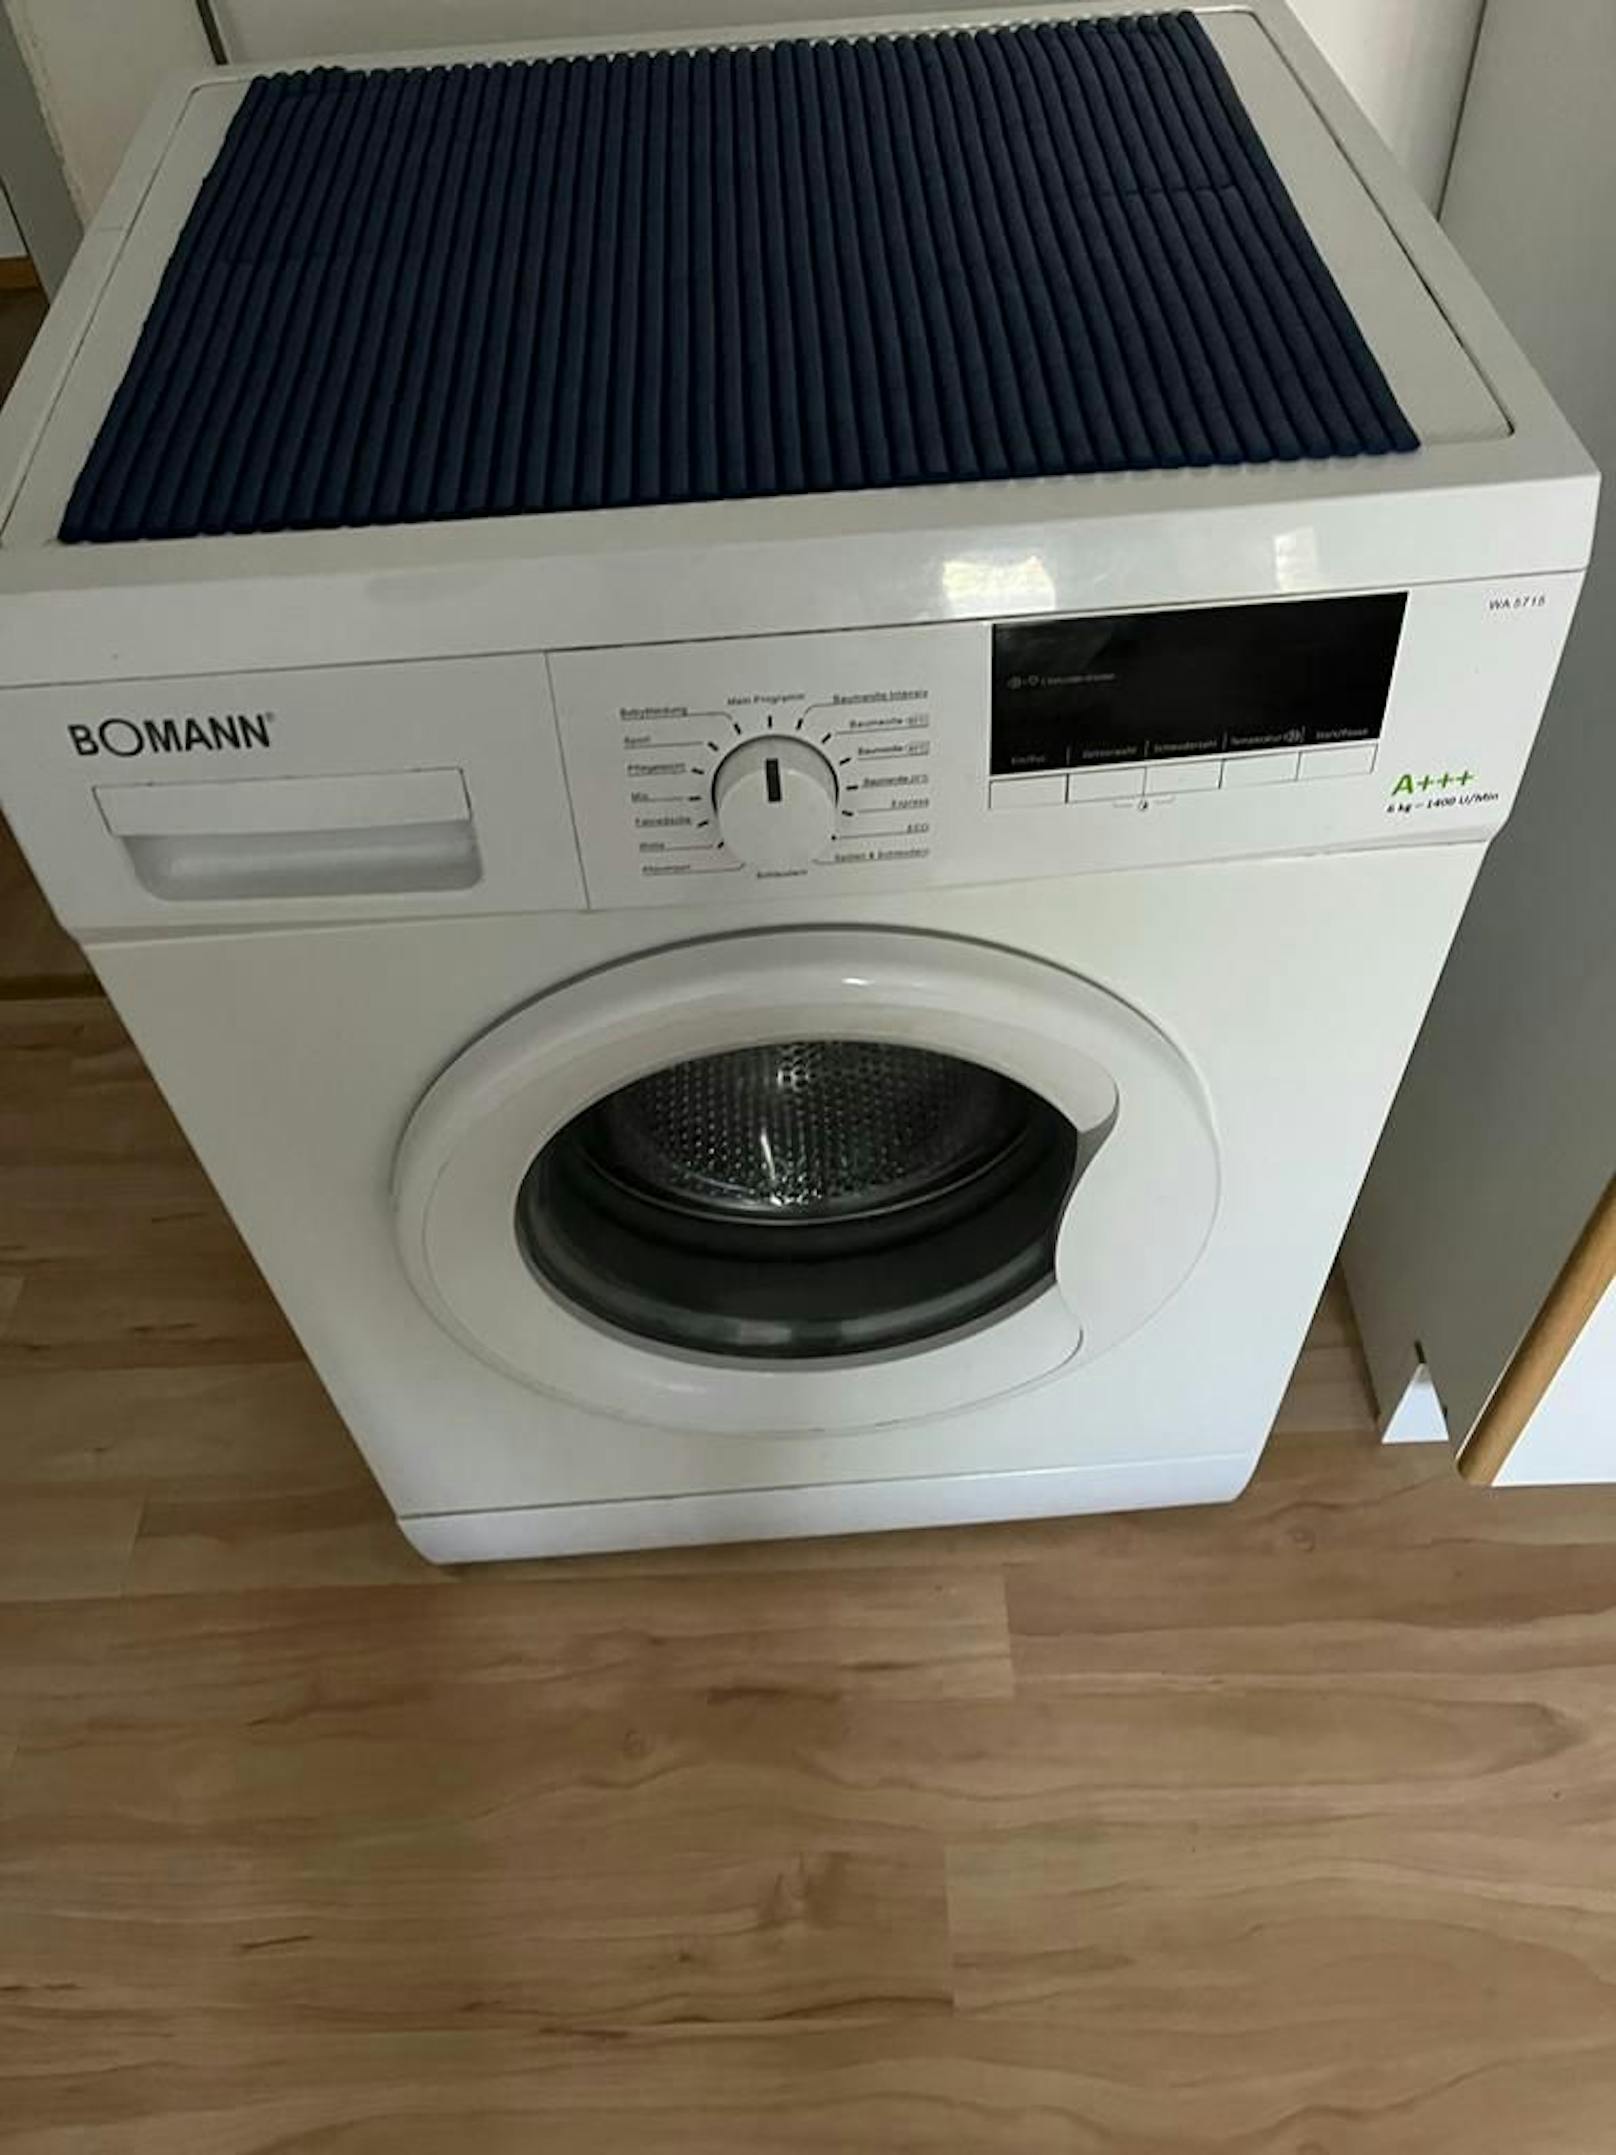 Die Waschmaschine, gekauft am 14.4. 2017 - pünktlich zum Garantieablauf Ende April die erste Fehlermeldung